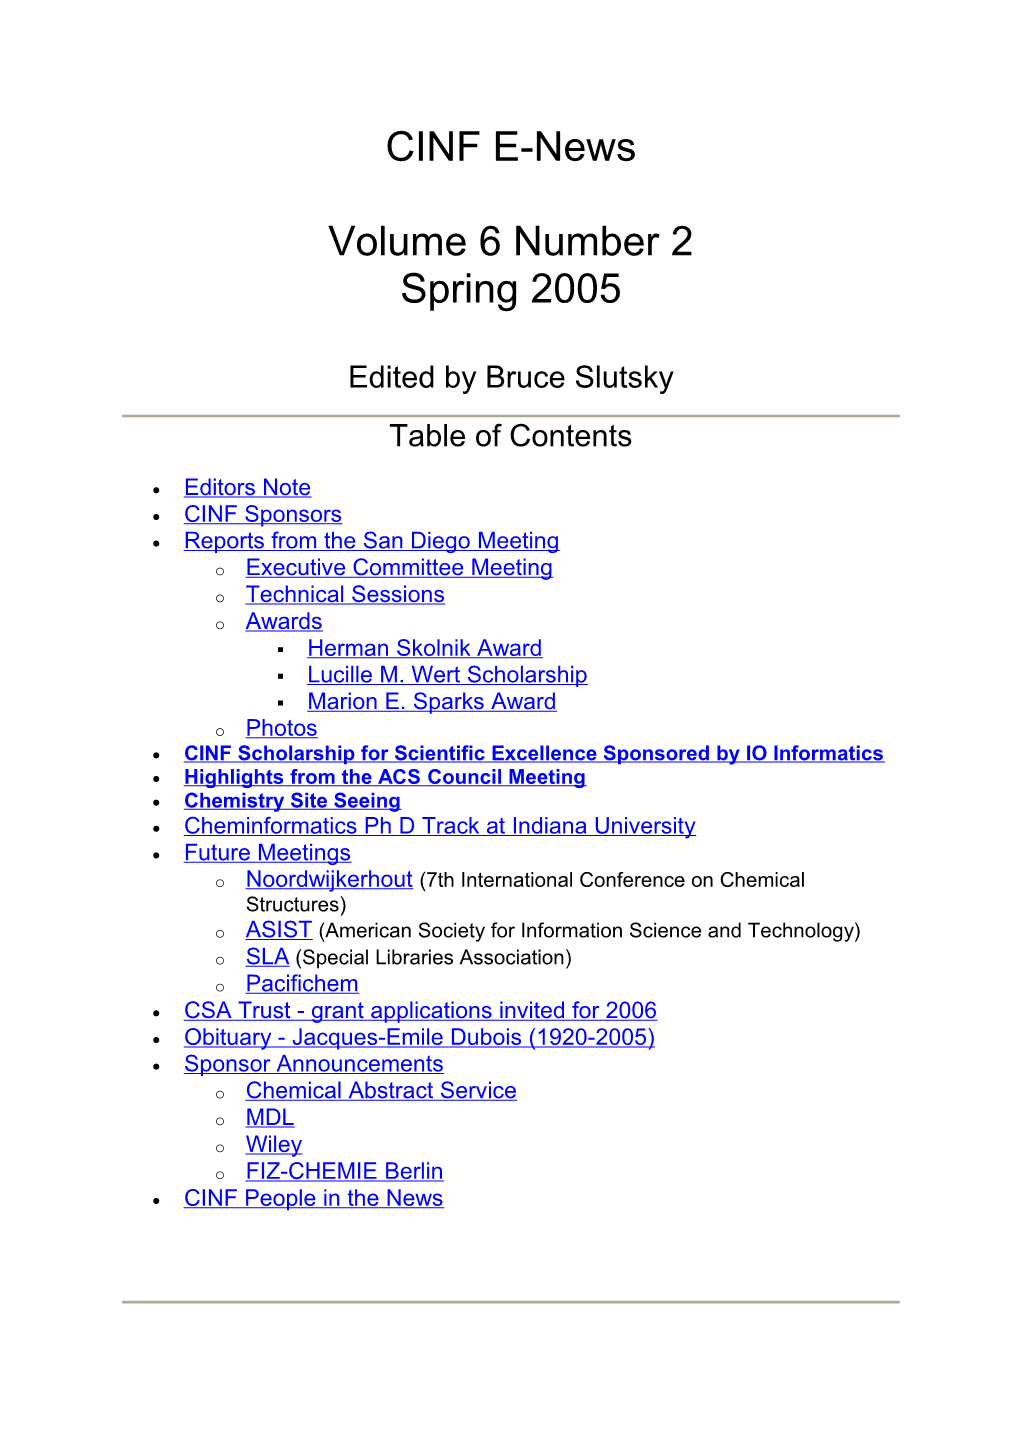 CINF E-News Volume 6 Number 2 Spring 2005 Edited by Bruce Slutsky